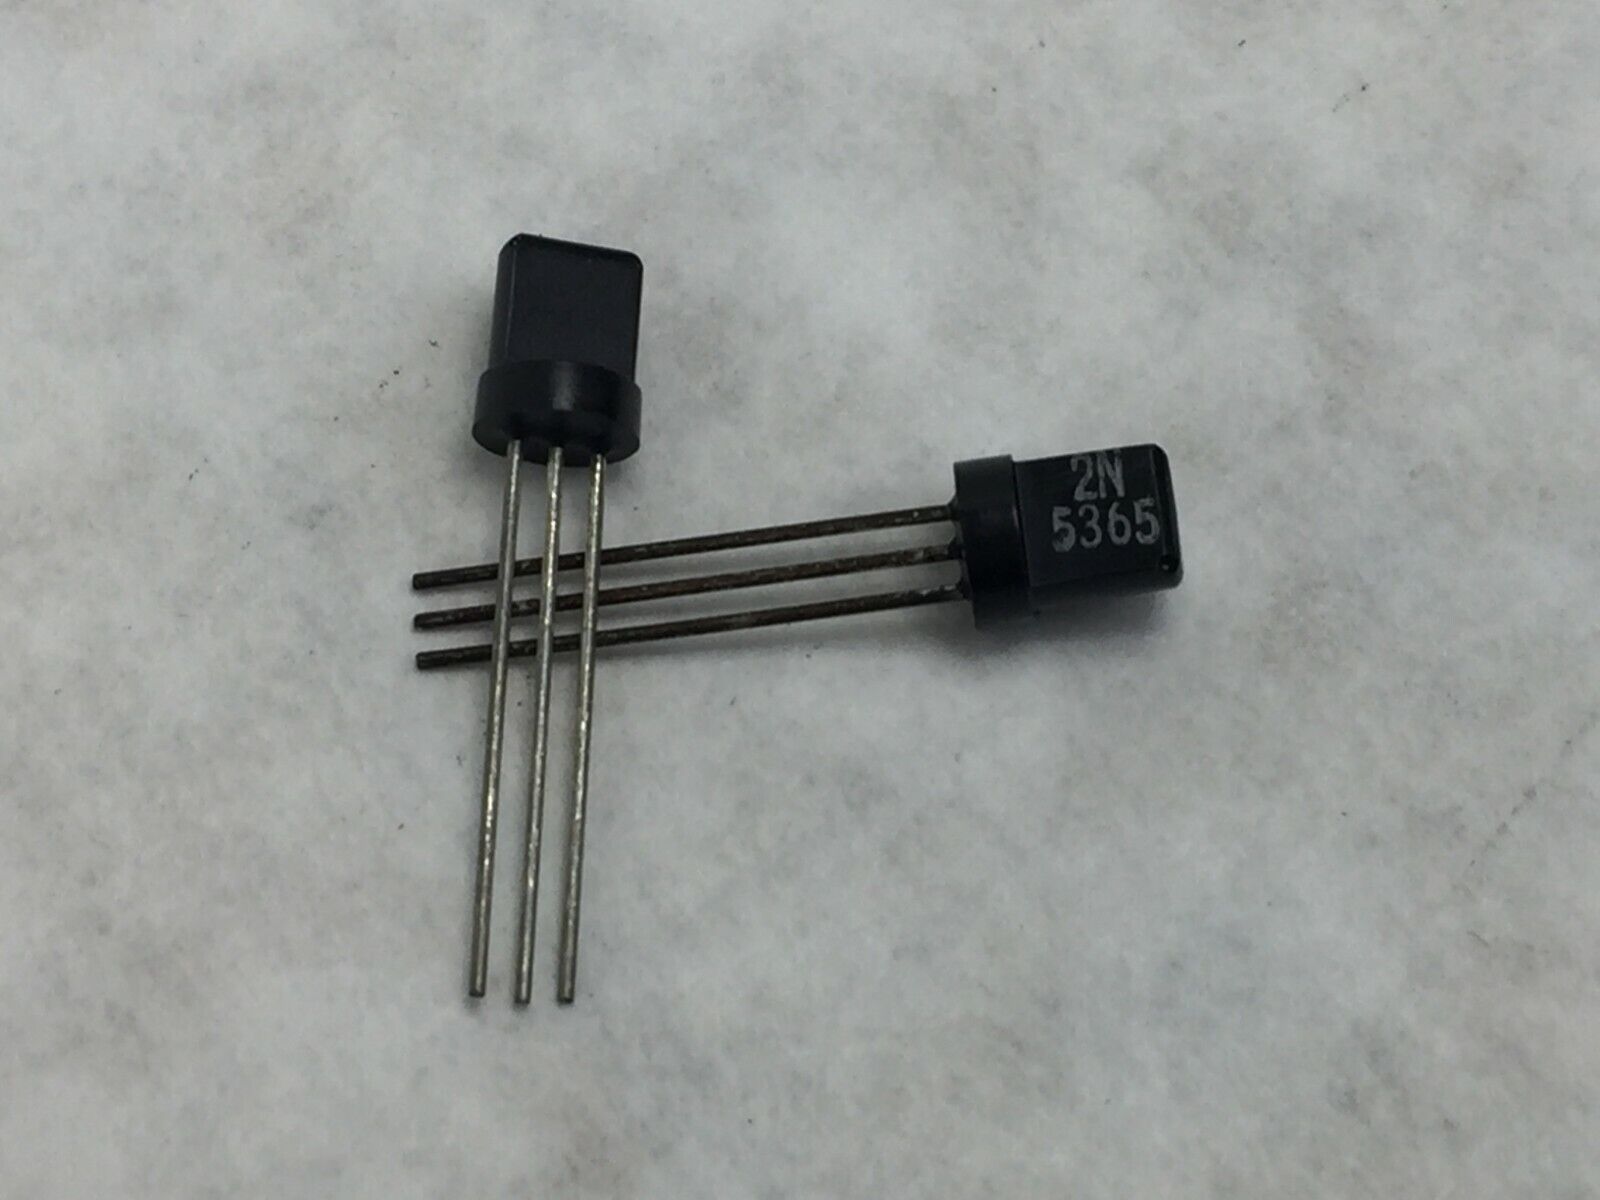 (23)  2N5365 PNP Transistor T0-92  Lot of 23